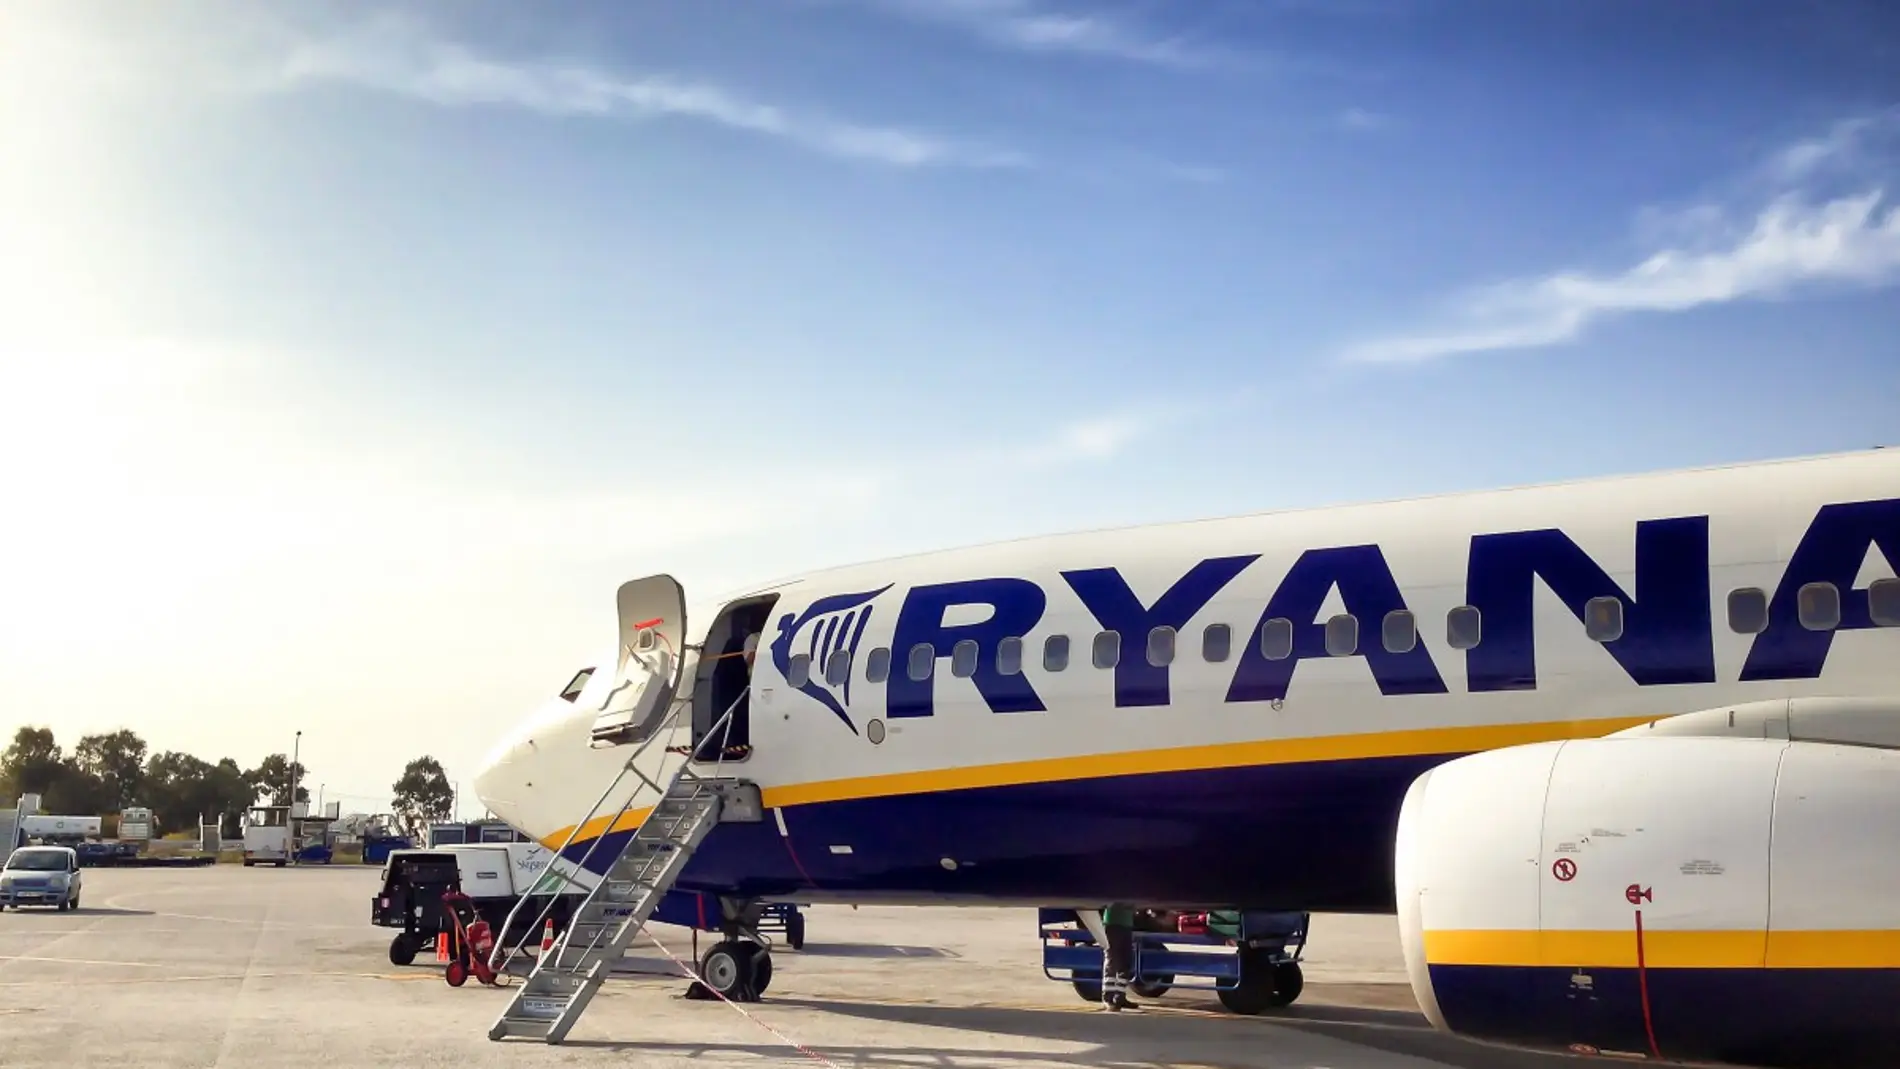 Equipaje de mano de Ryanair - Medidas, precio y cómo evitar pagar más